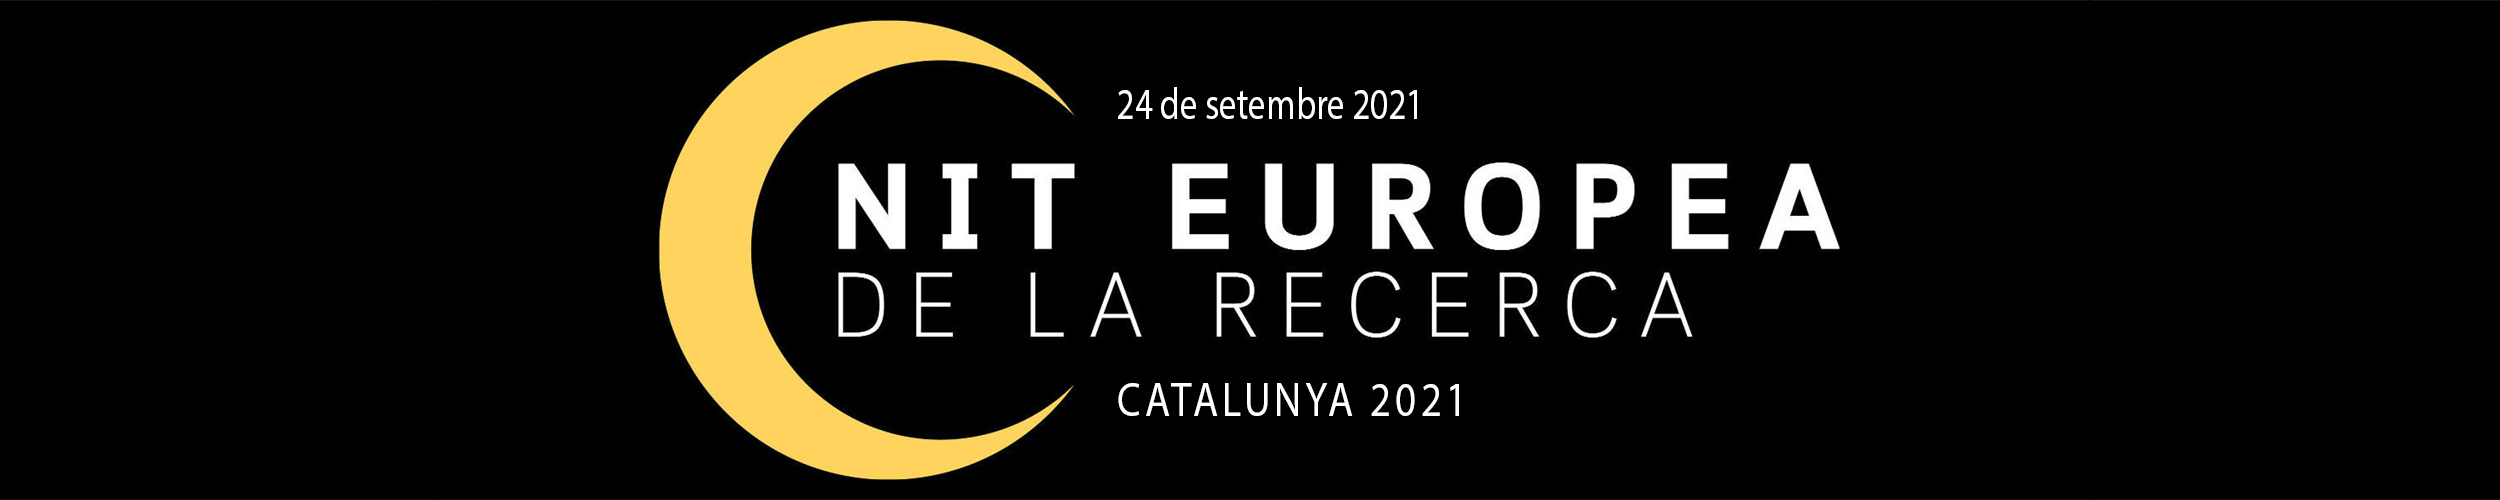 Nit-recerca-catalunya-setembre-2021